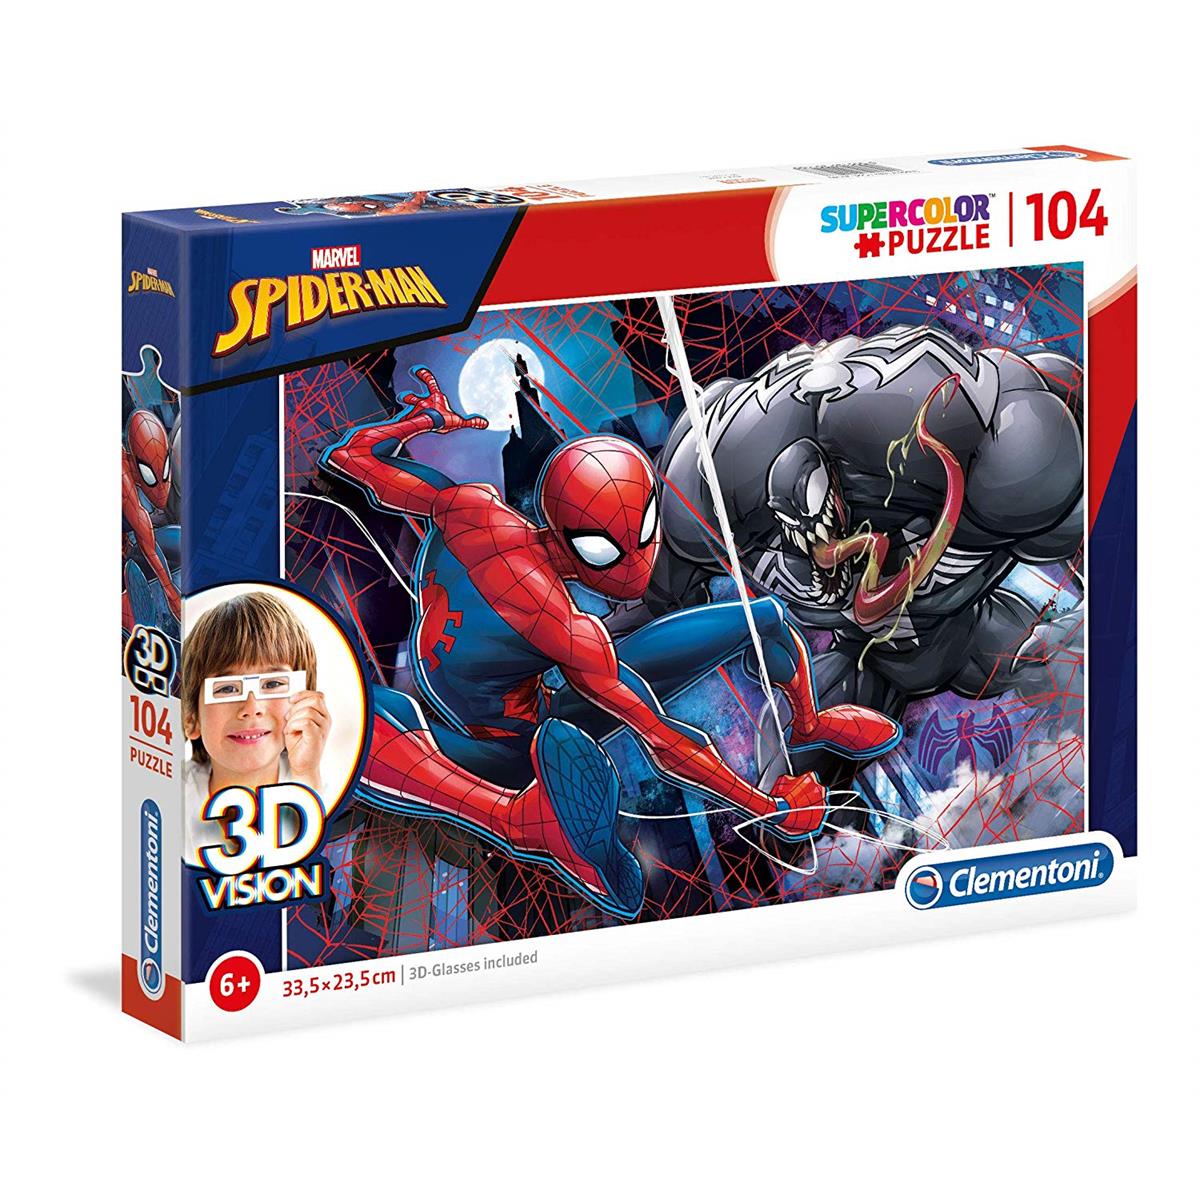 imza Kompozisyon Daktilo  Clementoni 104 Parçalı 3 Boyutlu Spiderman Yapboz Örümcek Adam Puzzle  Clementoni 6 Yaş ve Üzeri Çocuk Yapbozu – Bebekya